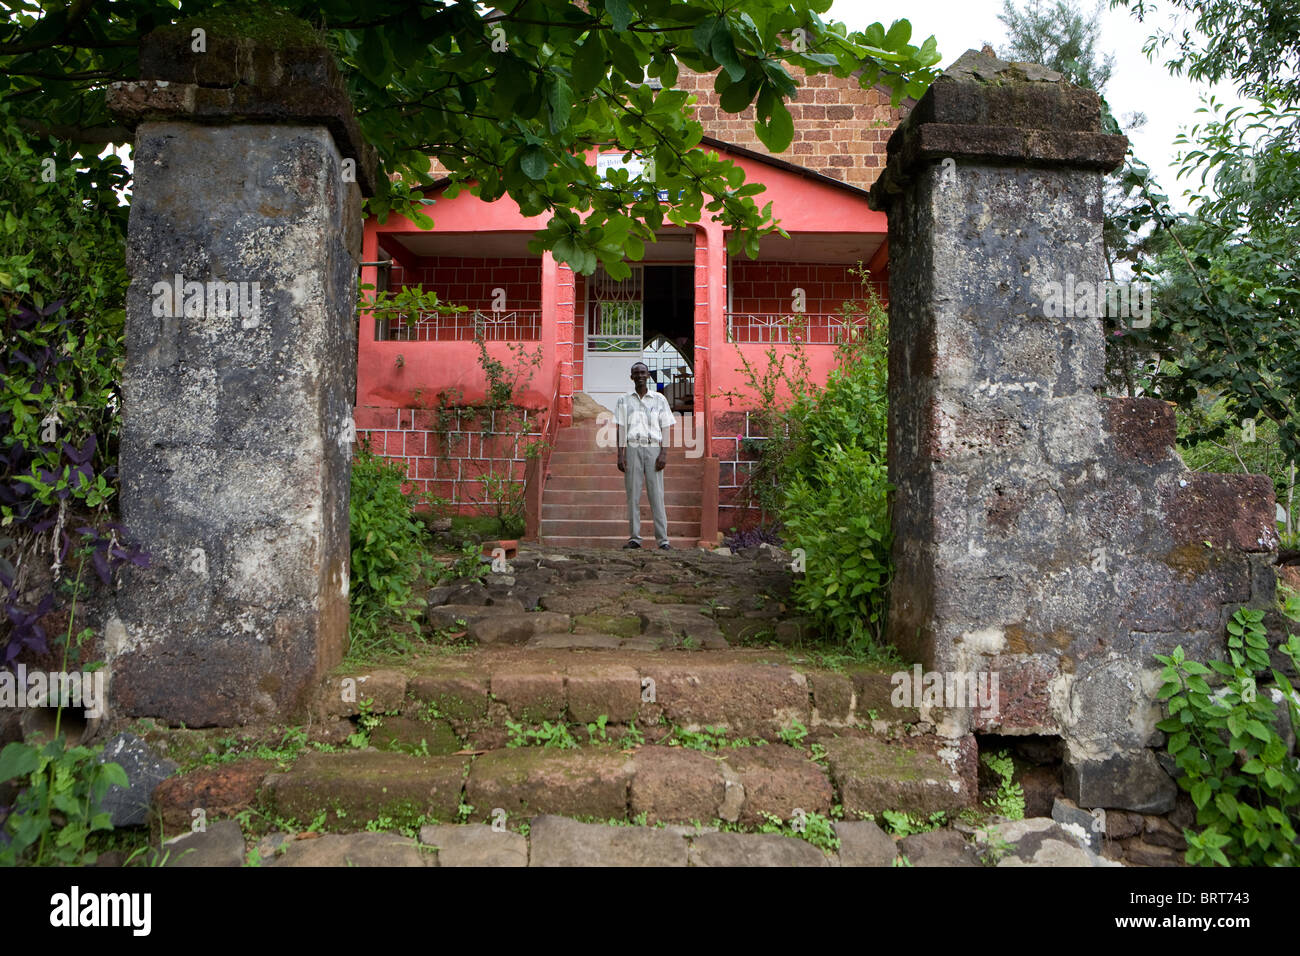 St Peters und St. James Parish Church in Bathurst Dorf Freetown Sierra Leone Westafrika Stockfoto